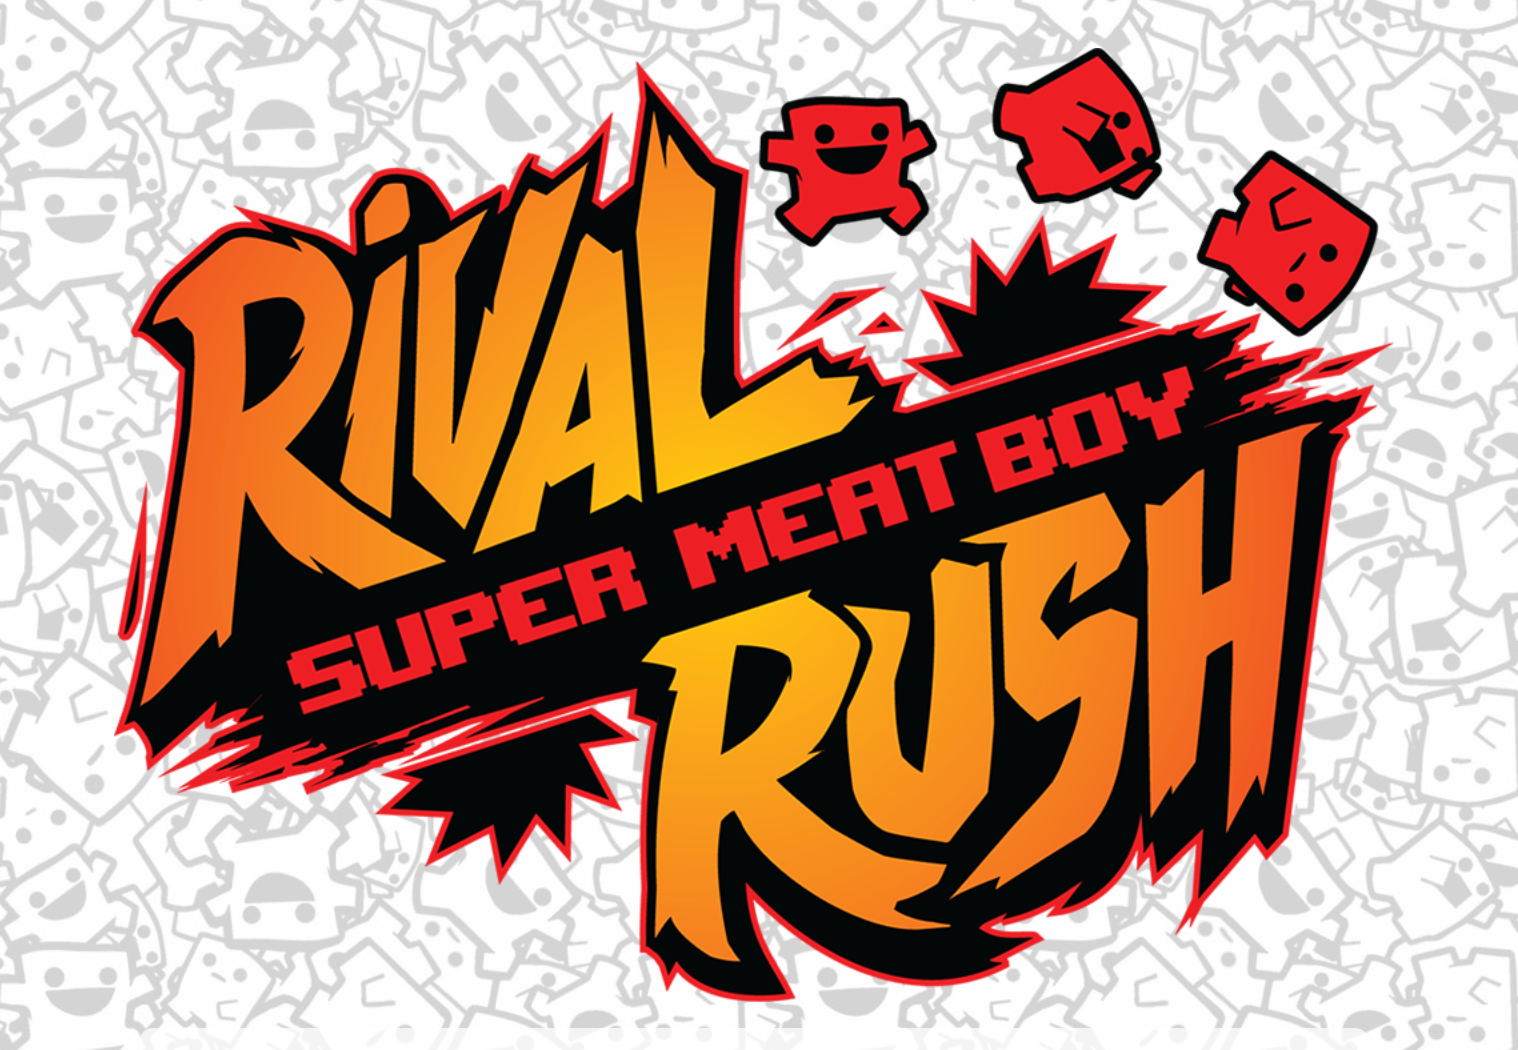 Super Meat Boy kini mempunyai Permainan Kad Fizikal yang disebut Rival Rush